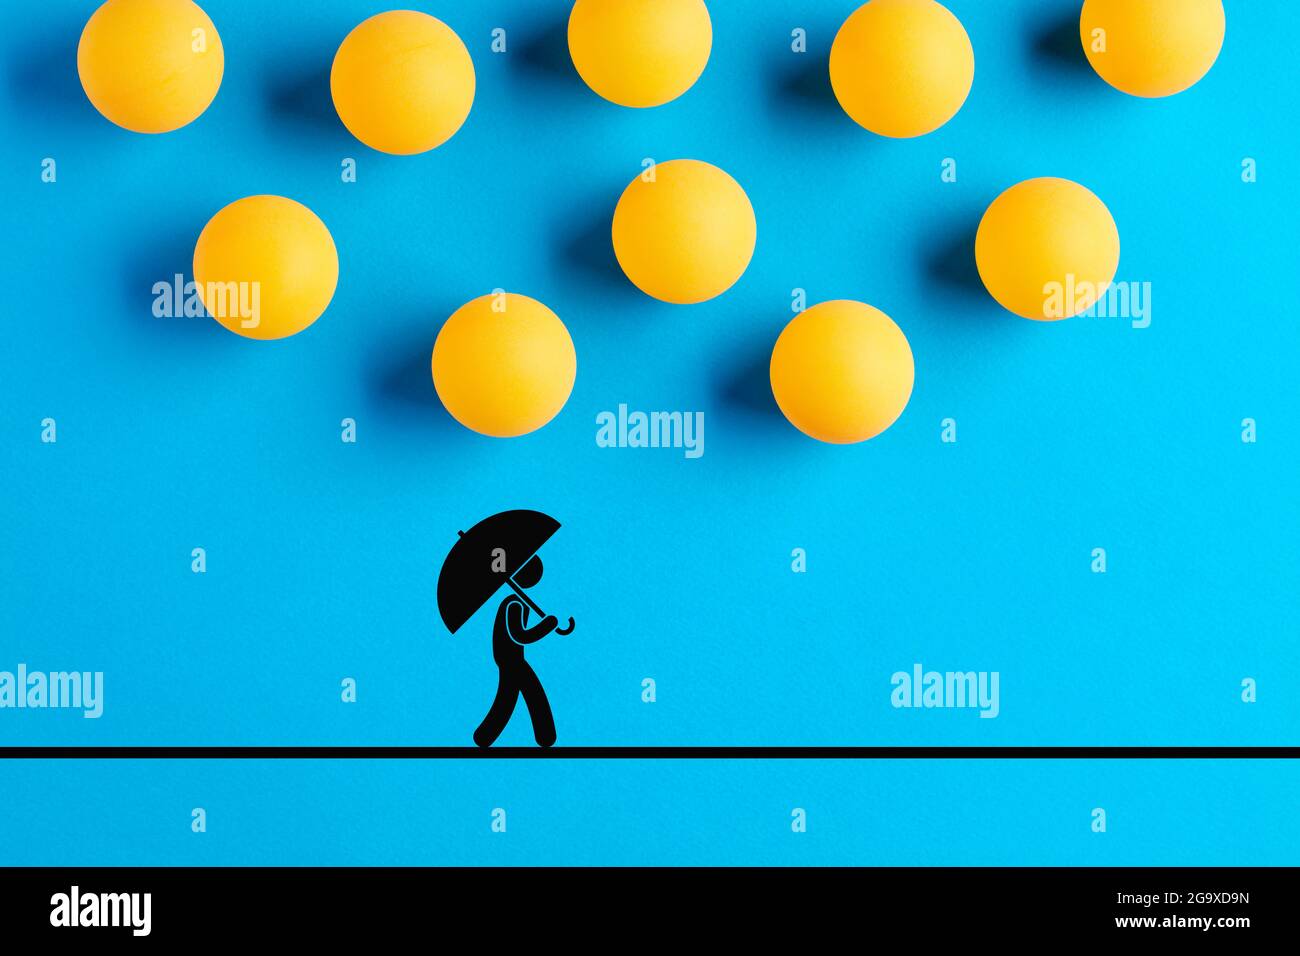 Tischtennisbälle, die als Regentropfen entworfen wurden, fallen auf die Ikone eines Mannes, der mit einem Regenschirm läuft. Katastrophe, Unglück, Unfall, Risiko oder Gefahr überkommen Stockfoto